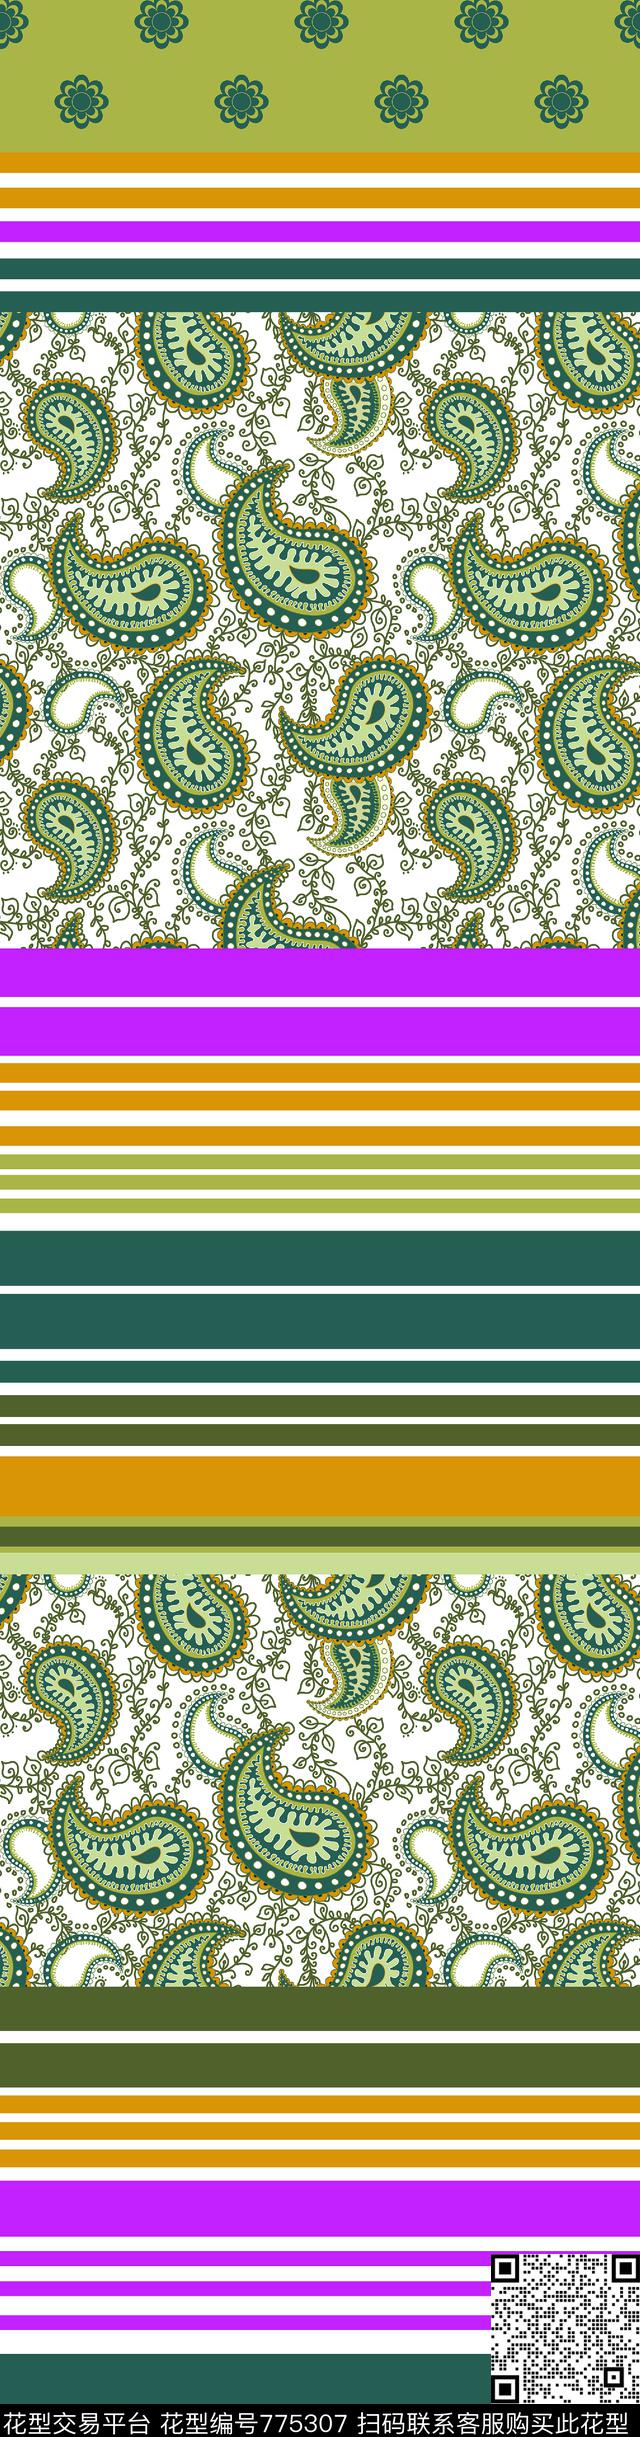 Bedset 03.jpg - 775307 - textile design bedset - 传统印花花型 － 床品花型设计 － 瓦栏